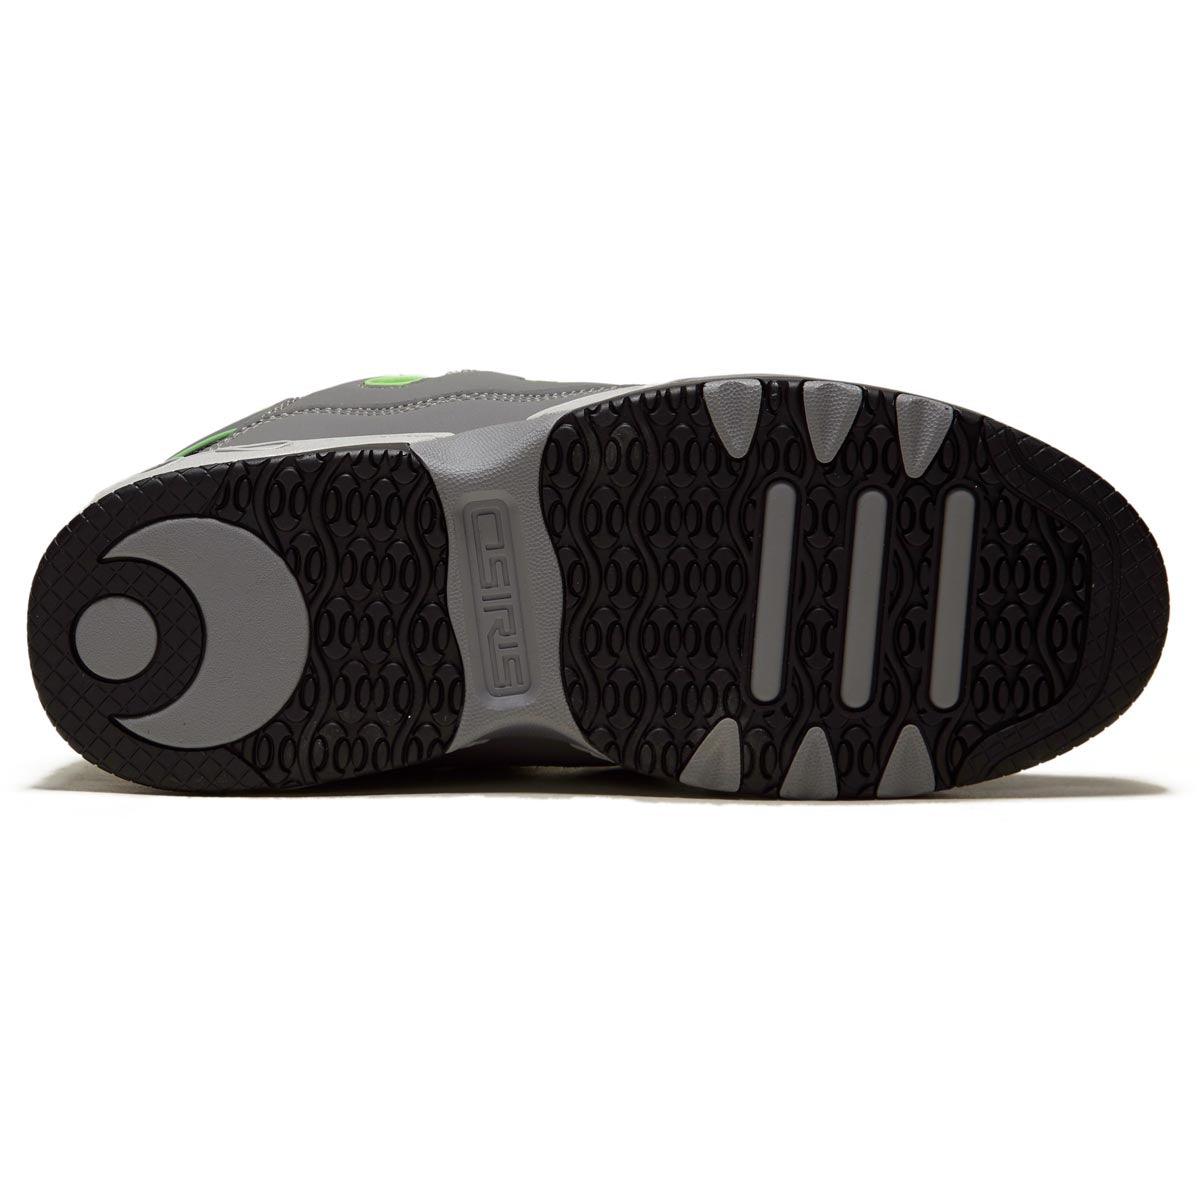 Osiris D3 OG Shoes - Black/Grey/Lime image 4